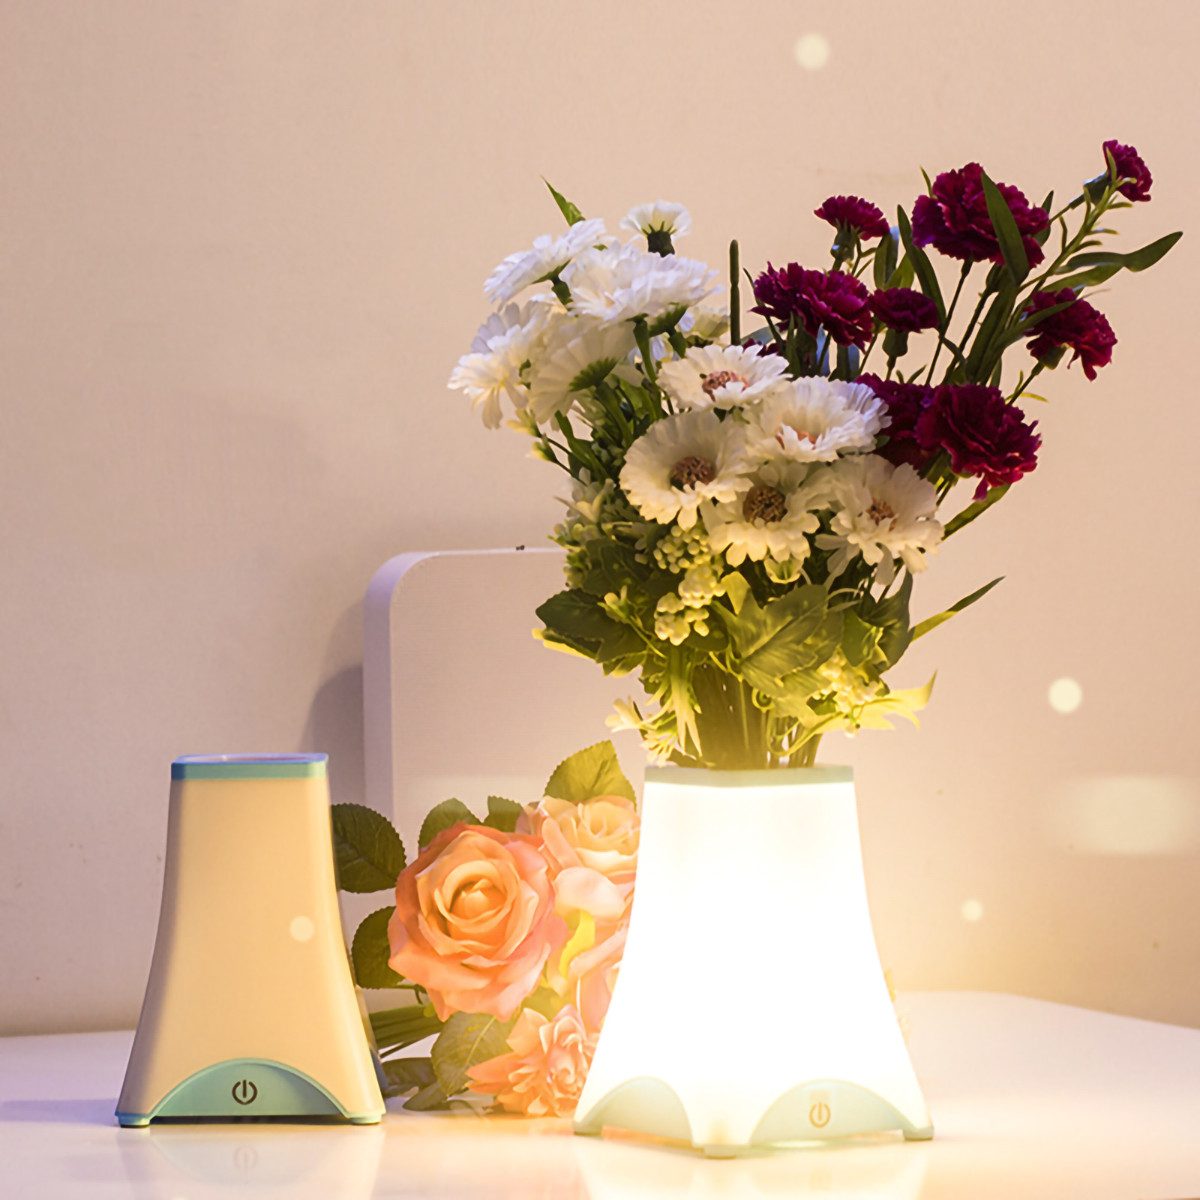 yozhiqu Schreibtischlampe Vasen-Tischlampe, wiederaufladbare Touch-Lampe, dimmbare Blumenlampe, kreative Nachtlampe, geeignet für Schlafzimmer Wohnzimmer Schreibtisch